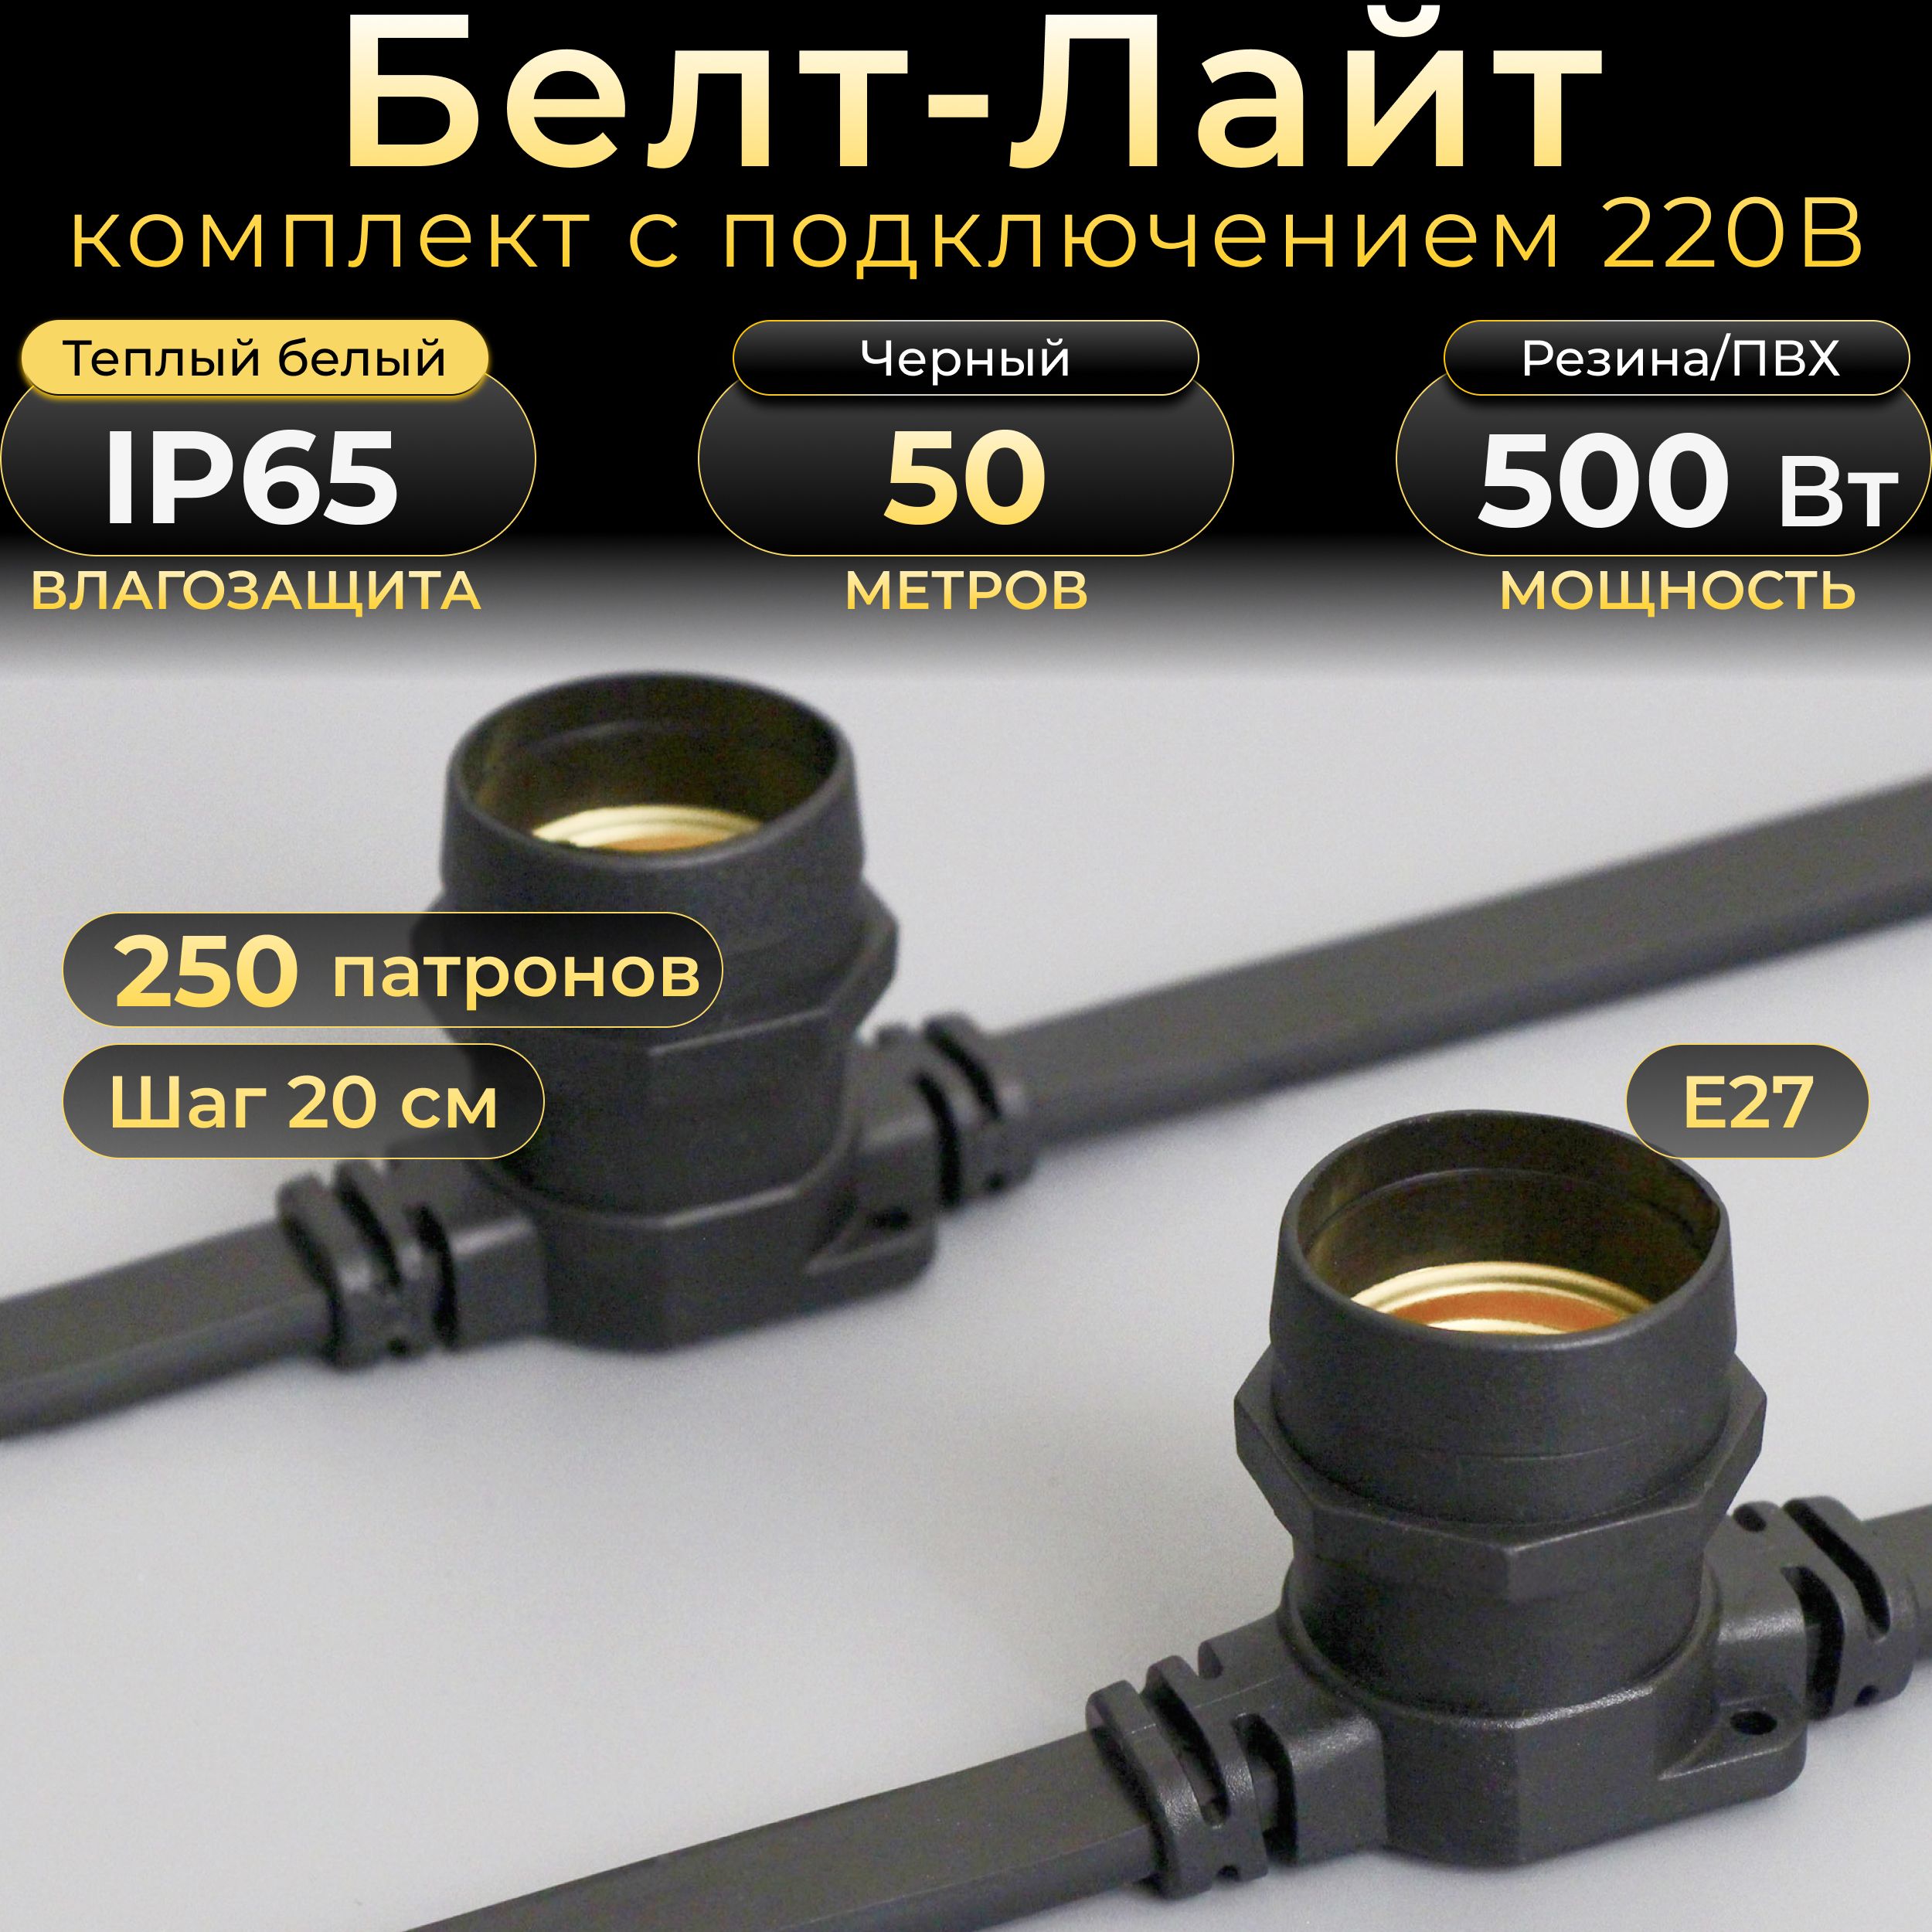 Белт-лайт TEAMPROF 50 м, черный каучук, шаг 20 см, 250 патронов Е27, IP65 (комплект)